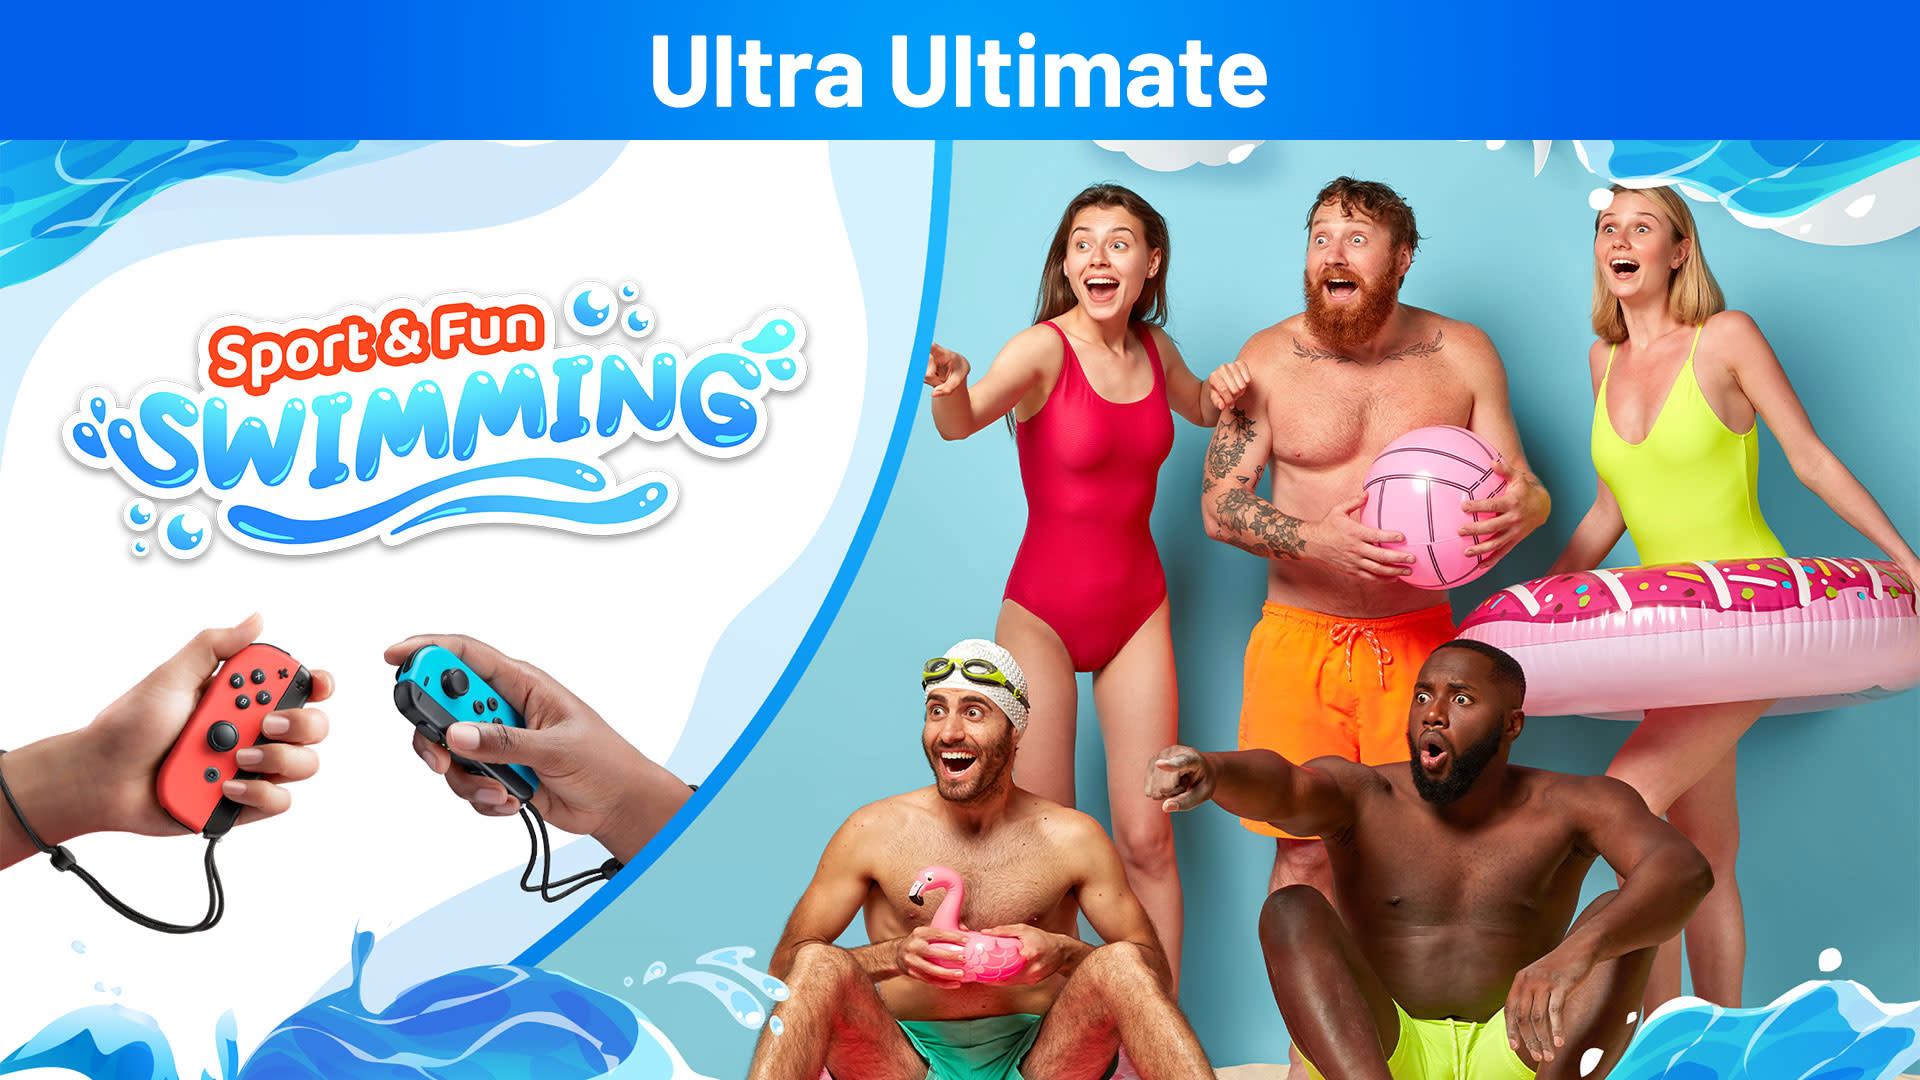 Sport & Fun: Swimming Ultra Ultimate